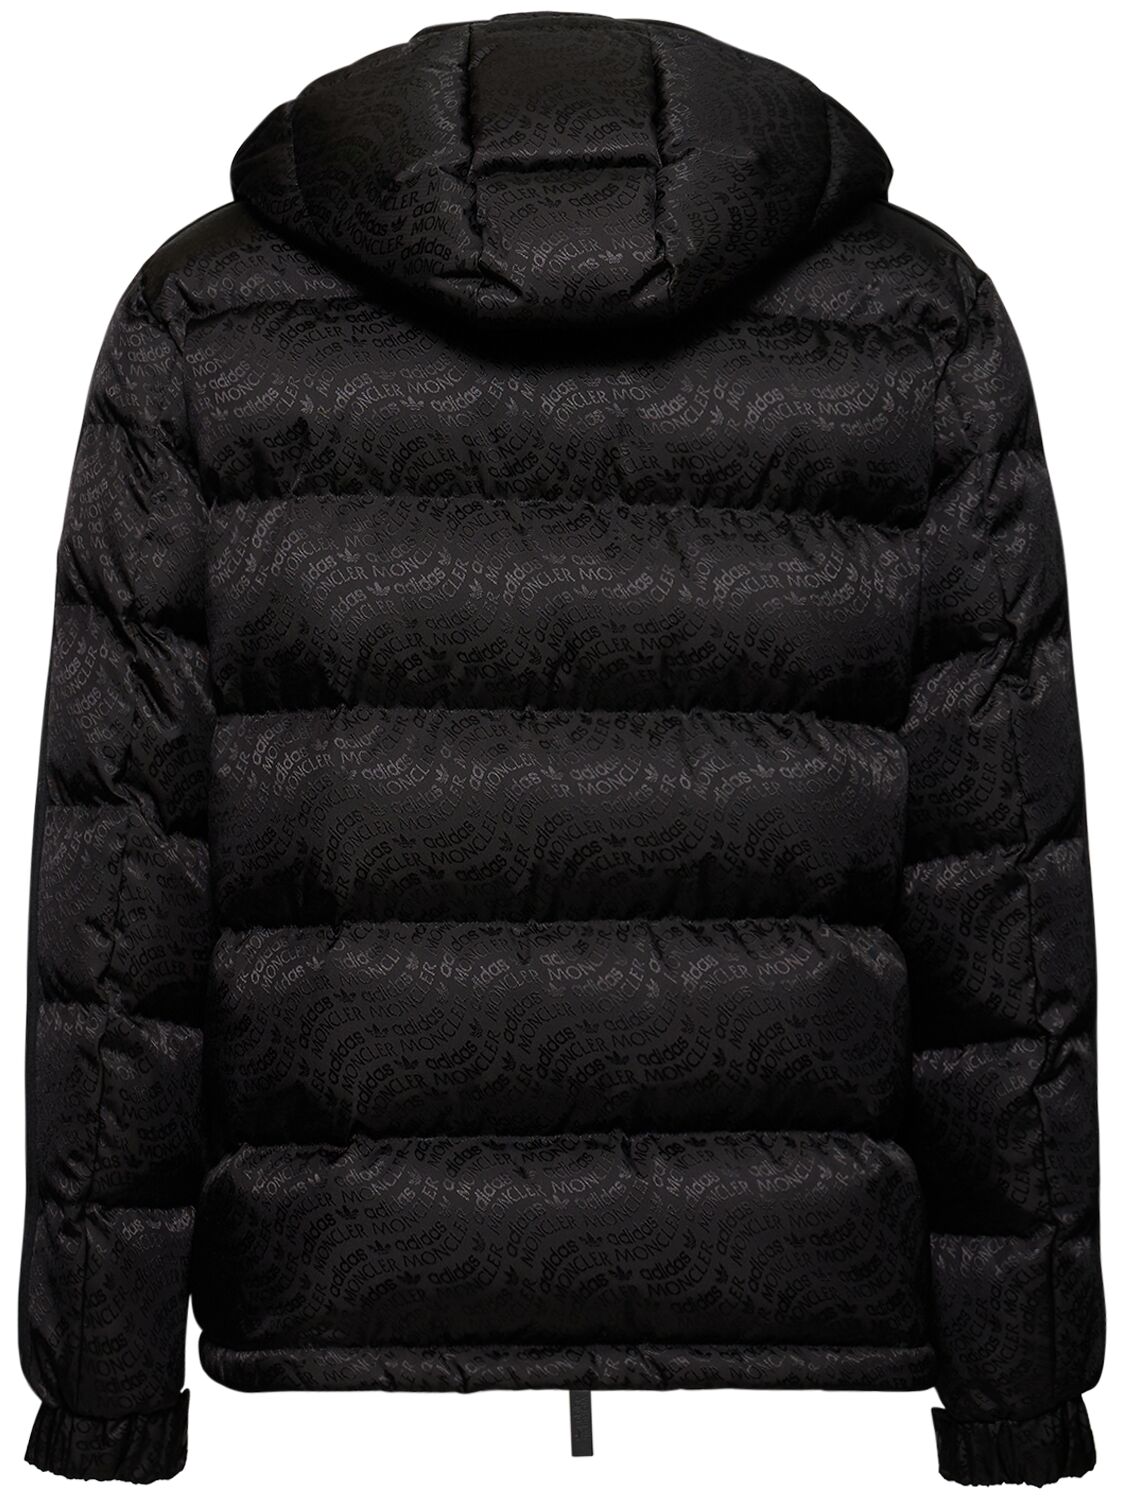 Shop Moncler Genius Moncler X Adidas Alpbach Down Jacket In Black